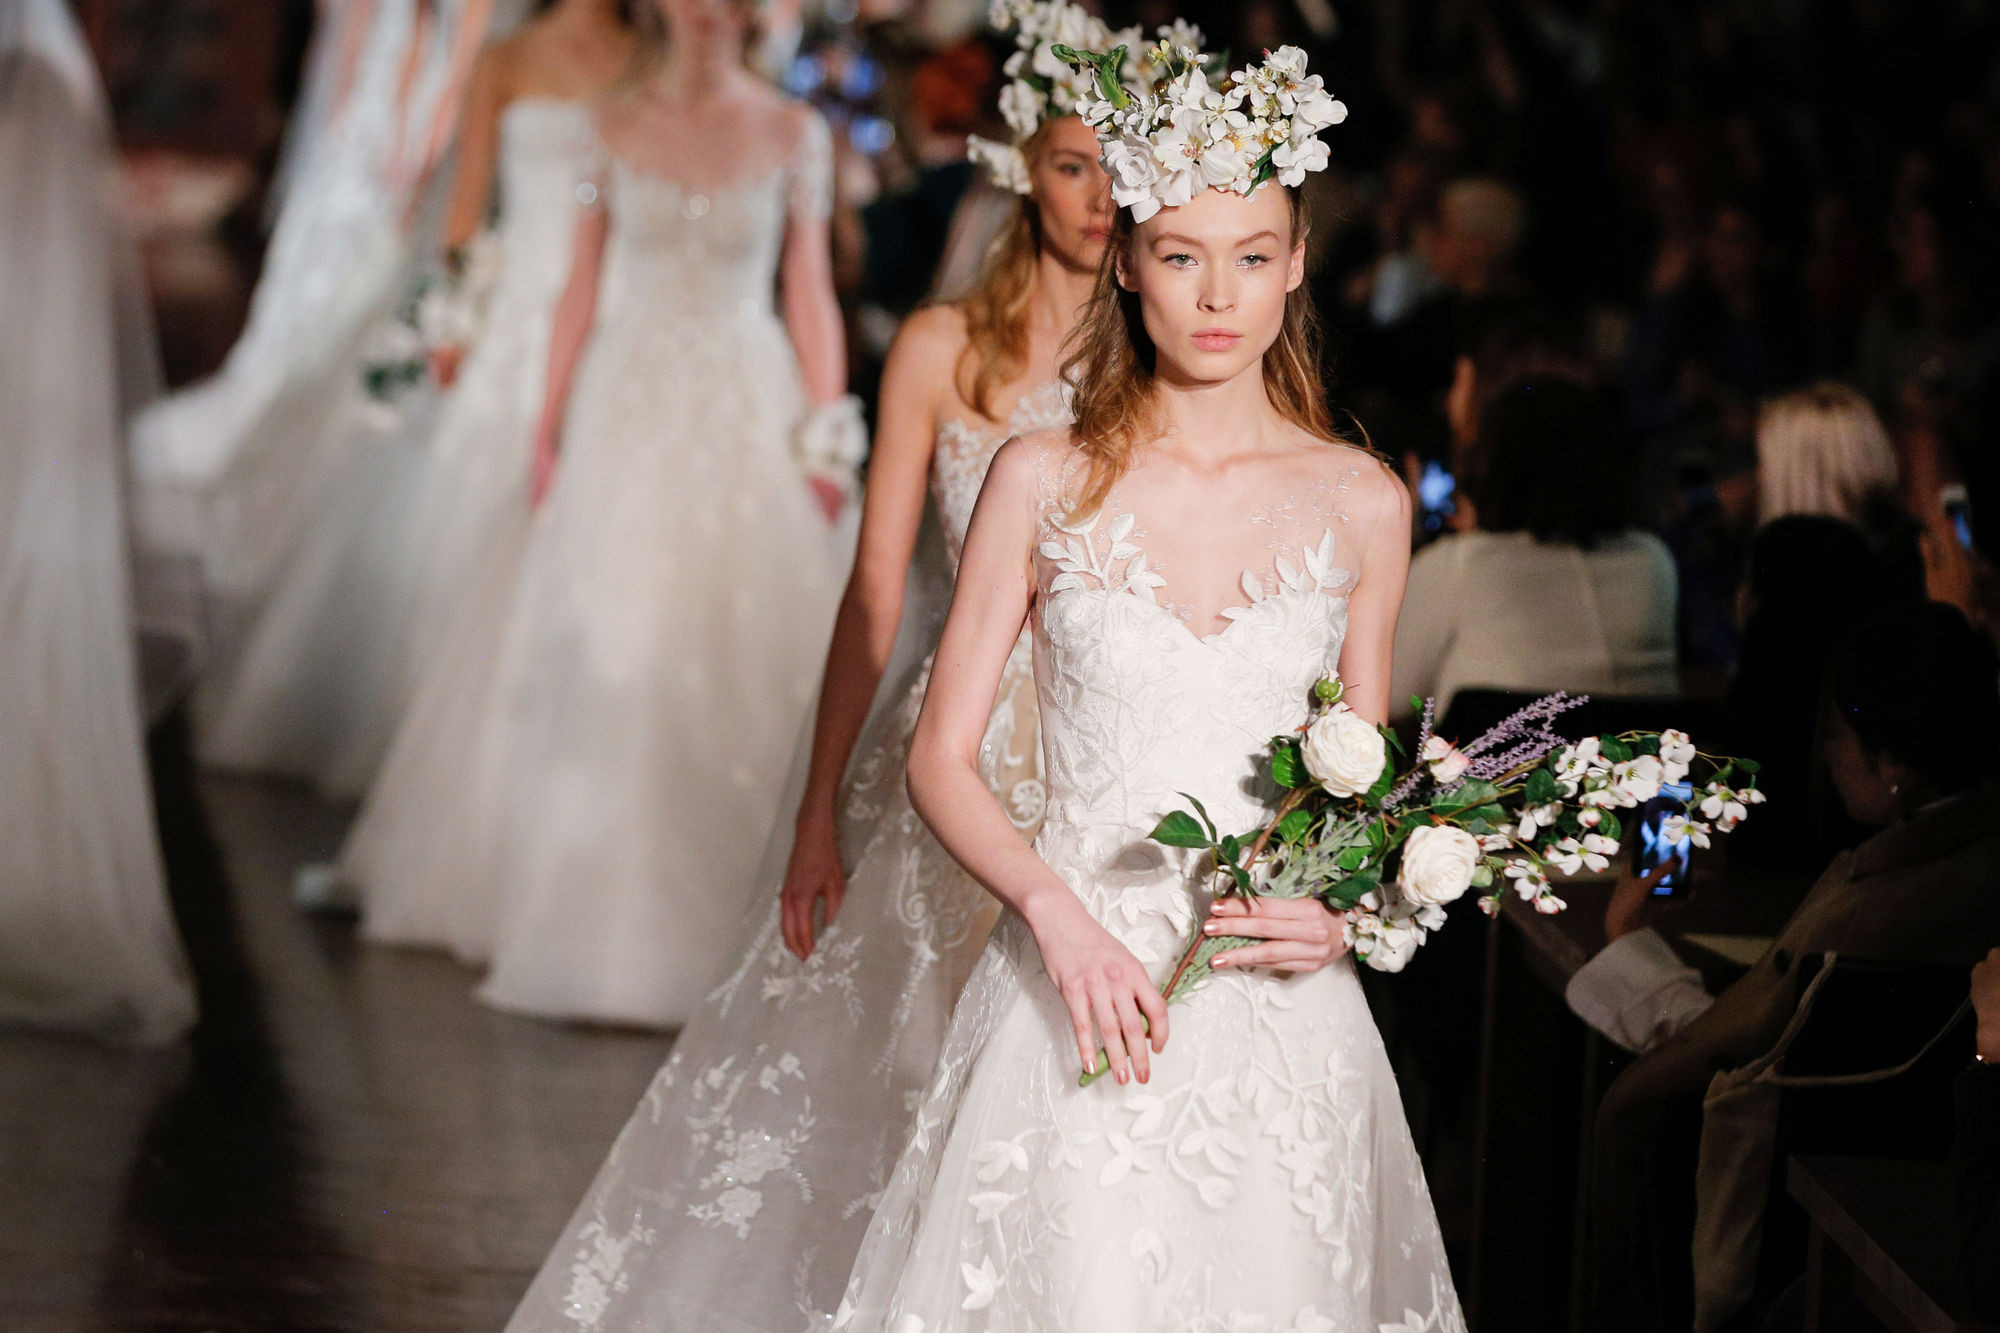 Hochzeitskleid Gebraucht
 Hochzeitskleid verkaufen gebraucht – Modische Kleider in